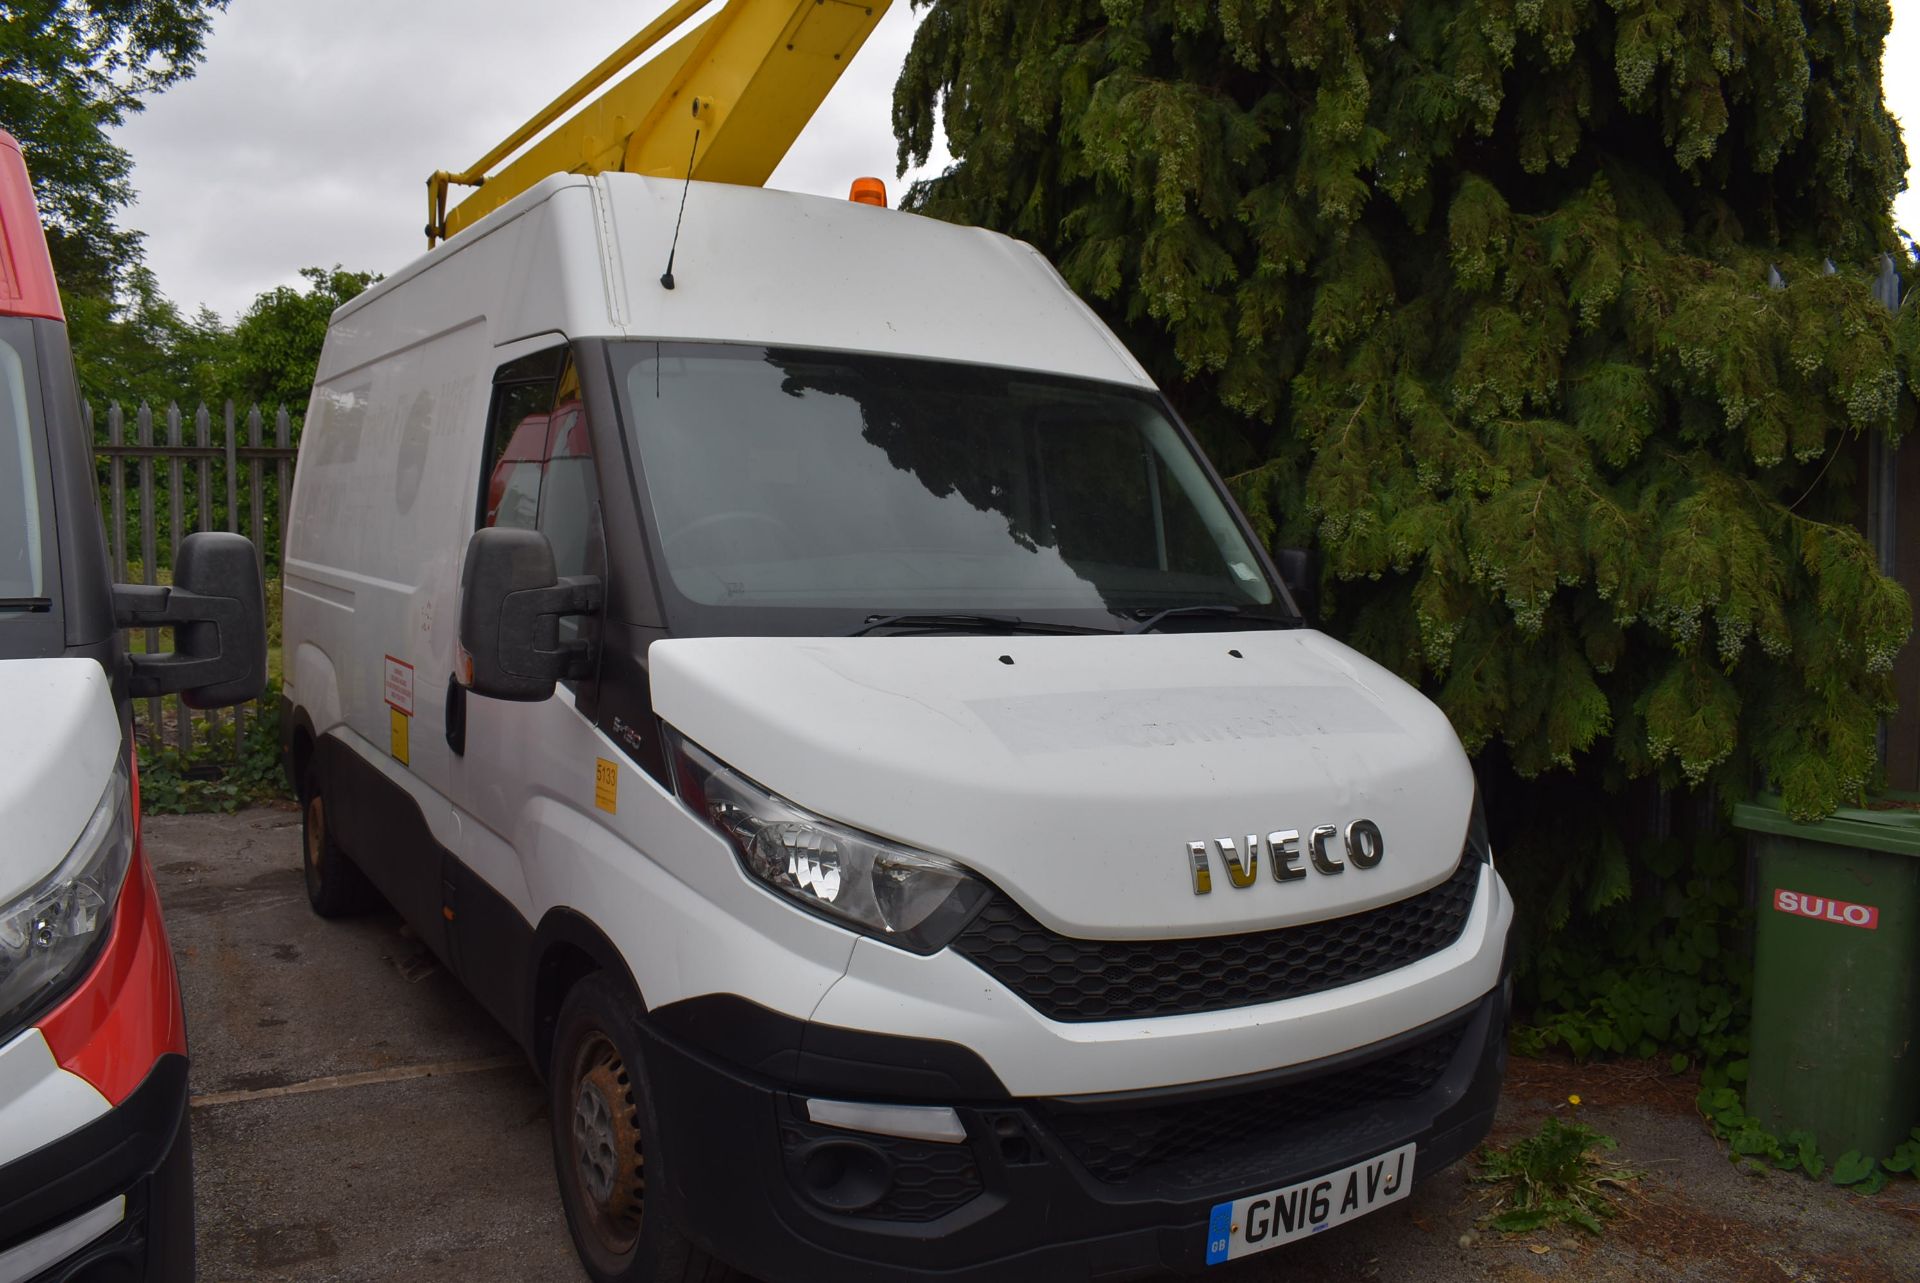 * Iveco Daily Panel Van with Platform Lift (safe working load 230kg), Reg: GN16 AVJ, MOT: 25/11/2023